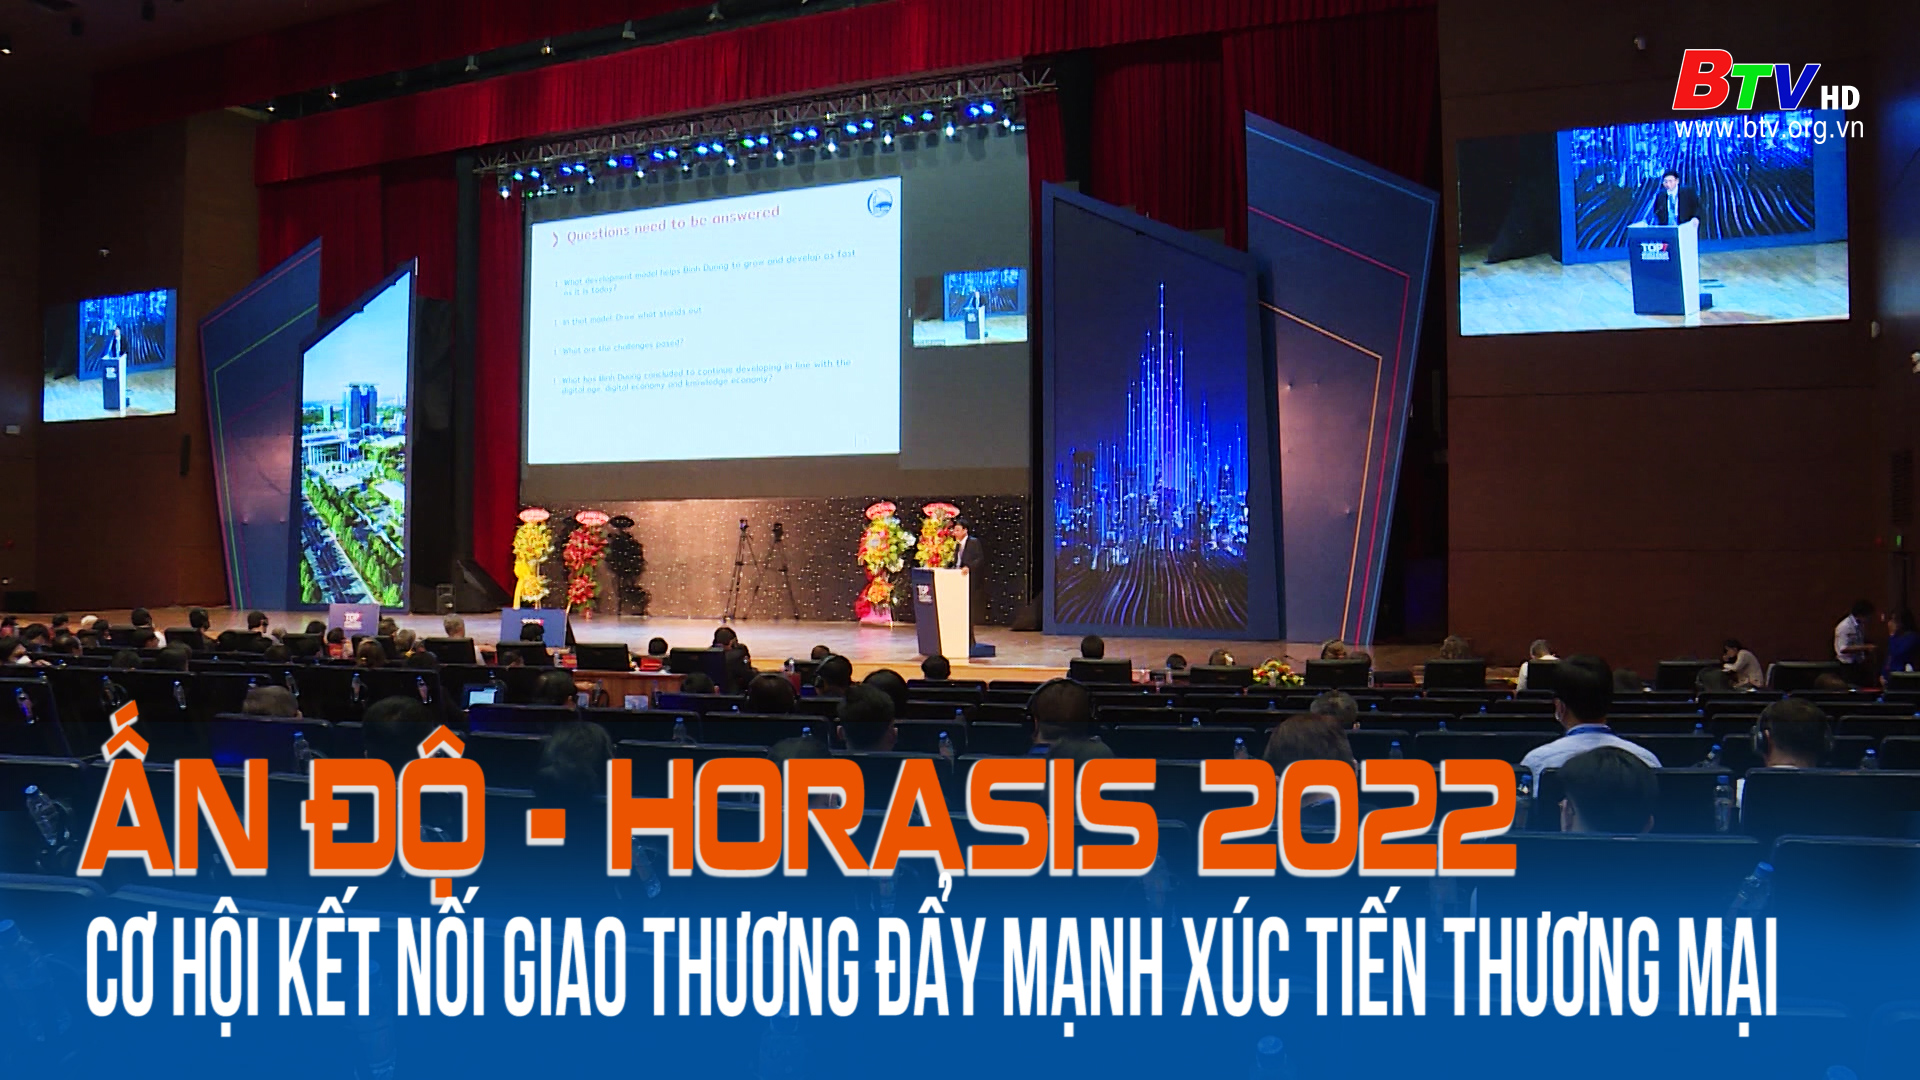 Ấn Độ - Hoarasis 2022: Cơ hội kết nối giao thương đẩy mạnh xúc tiến thương mại